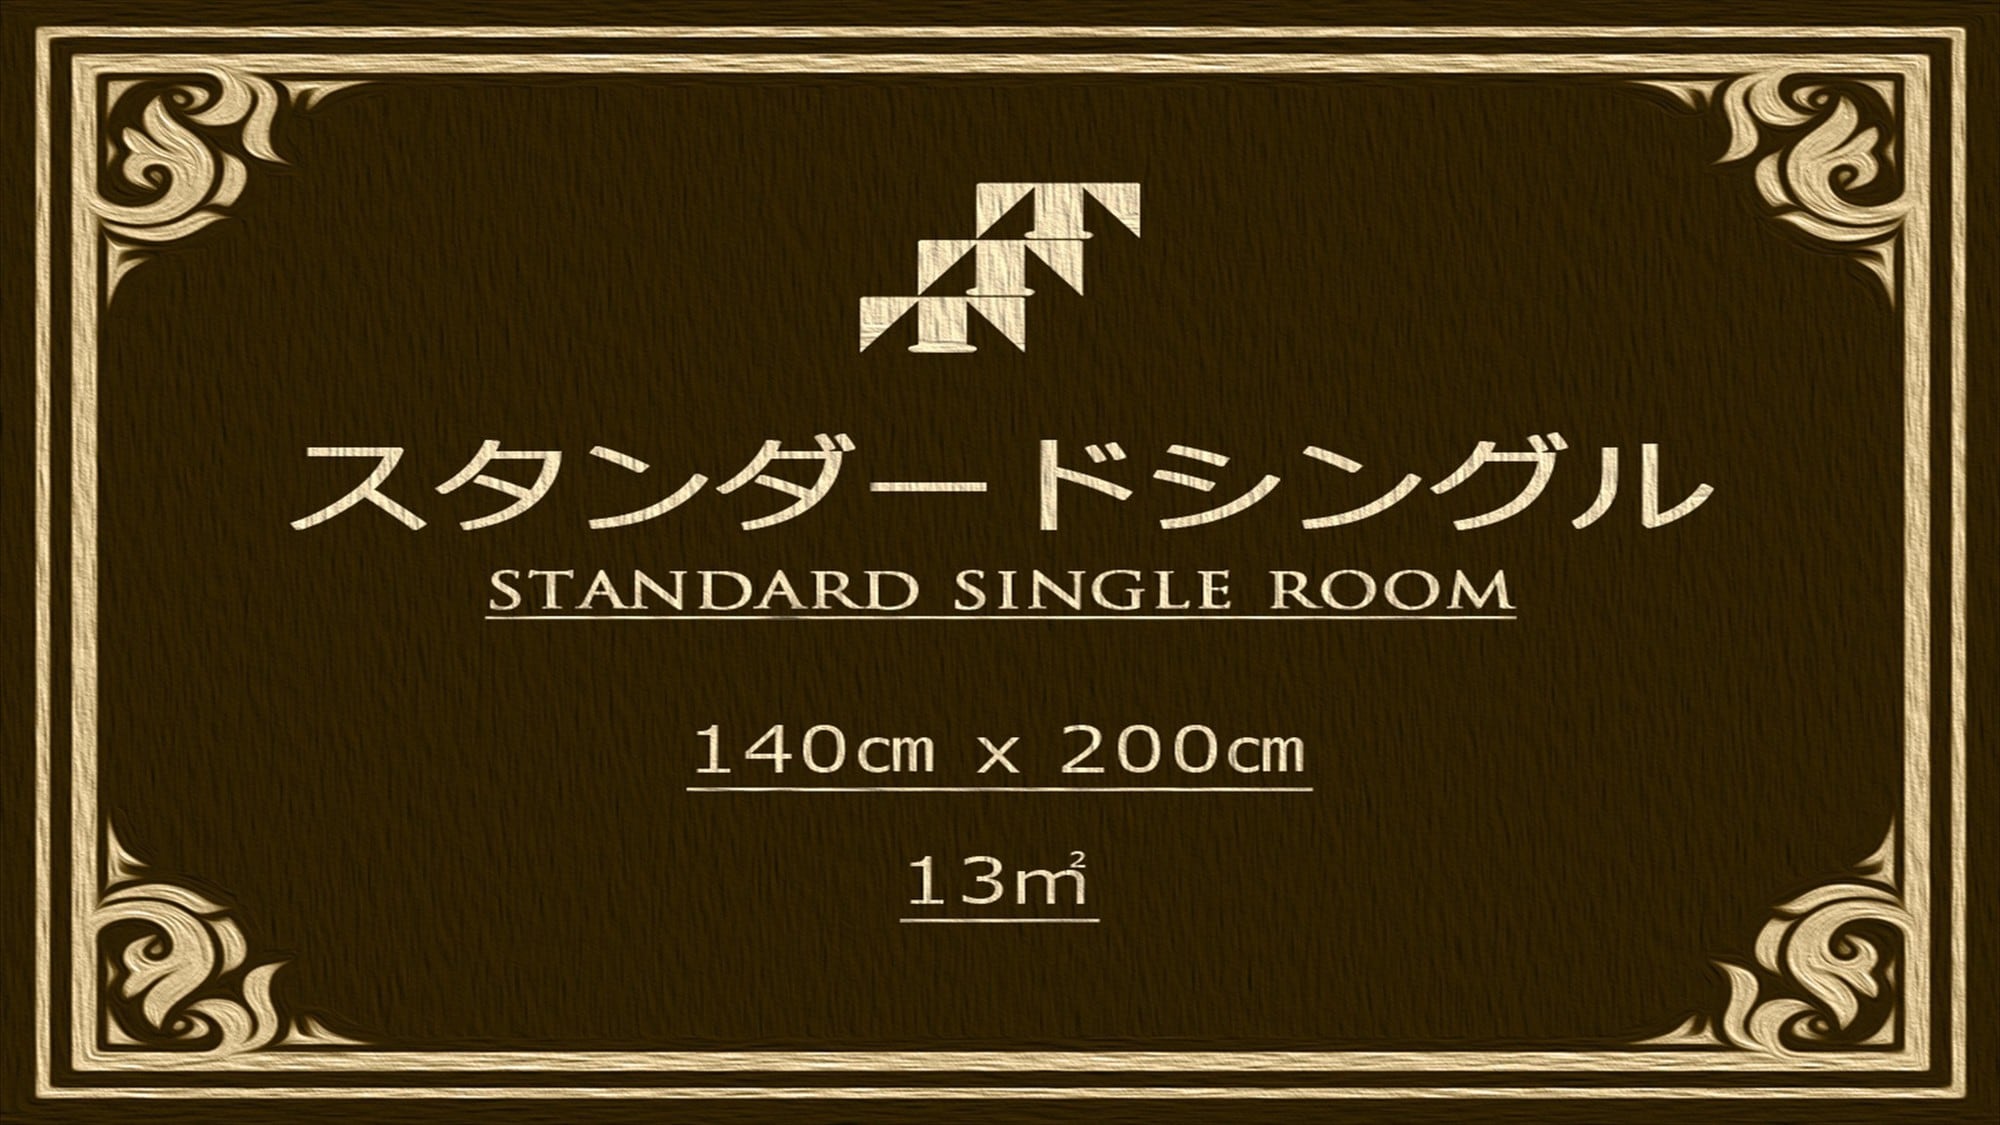 Standard Single